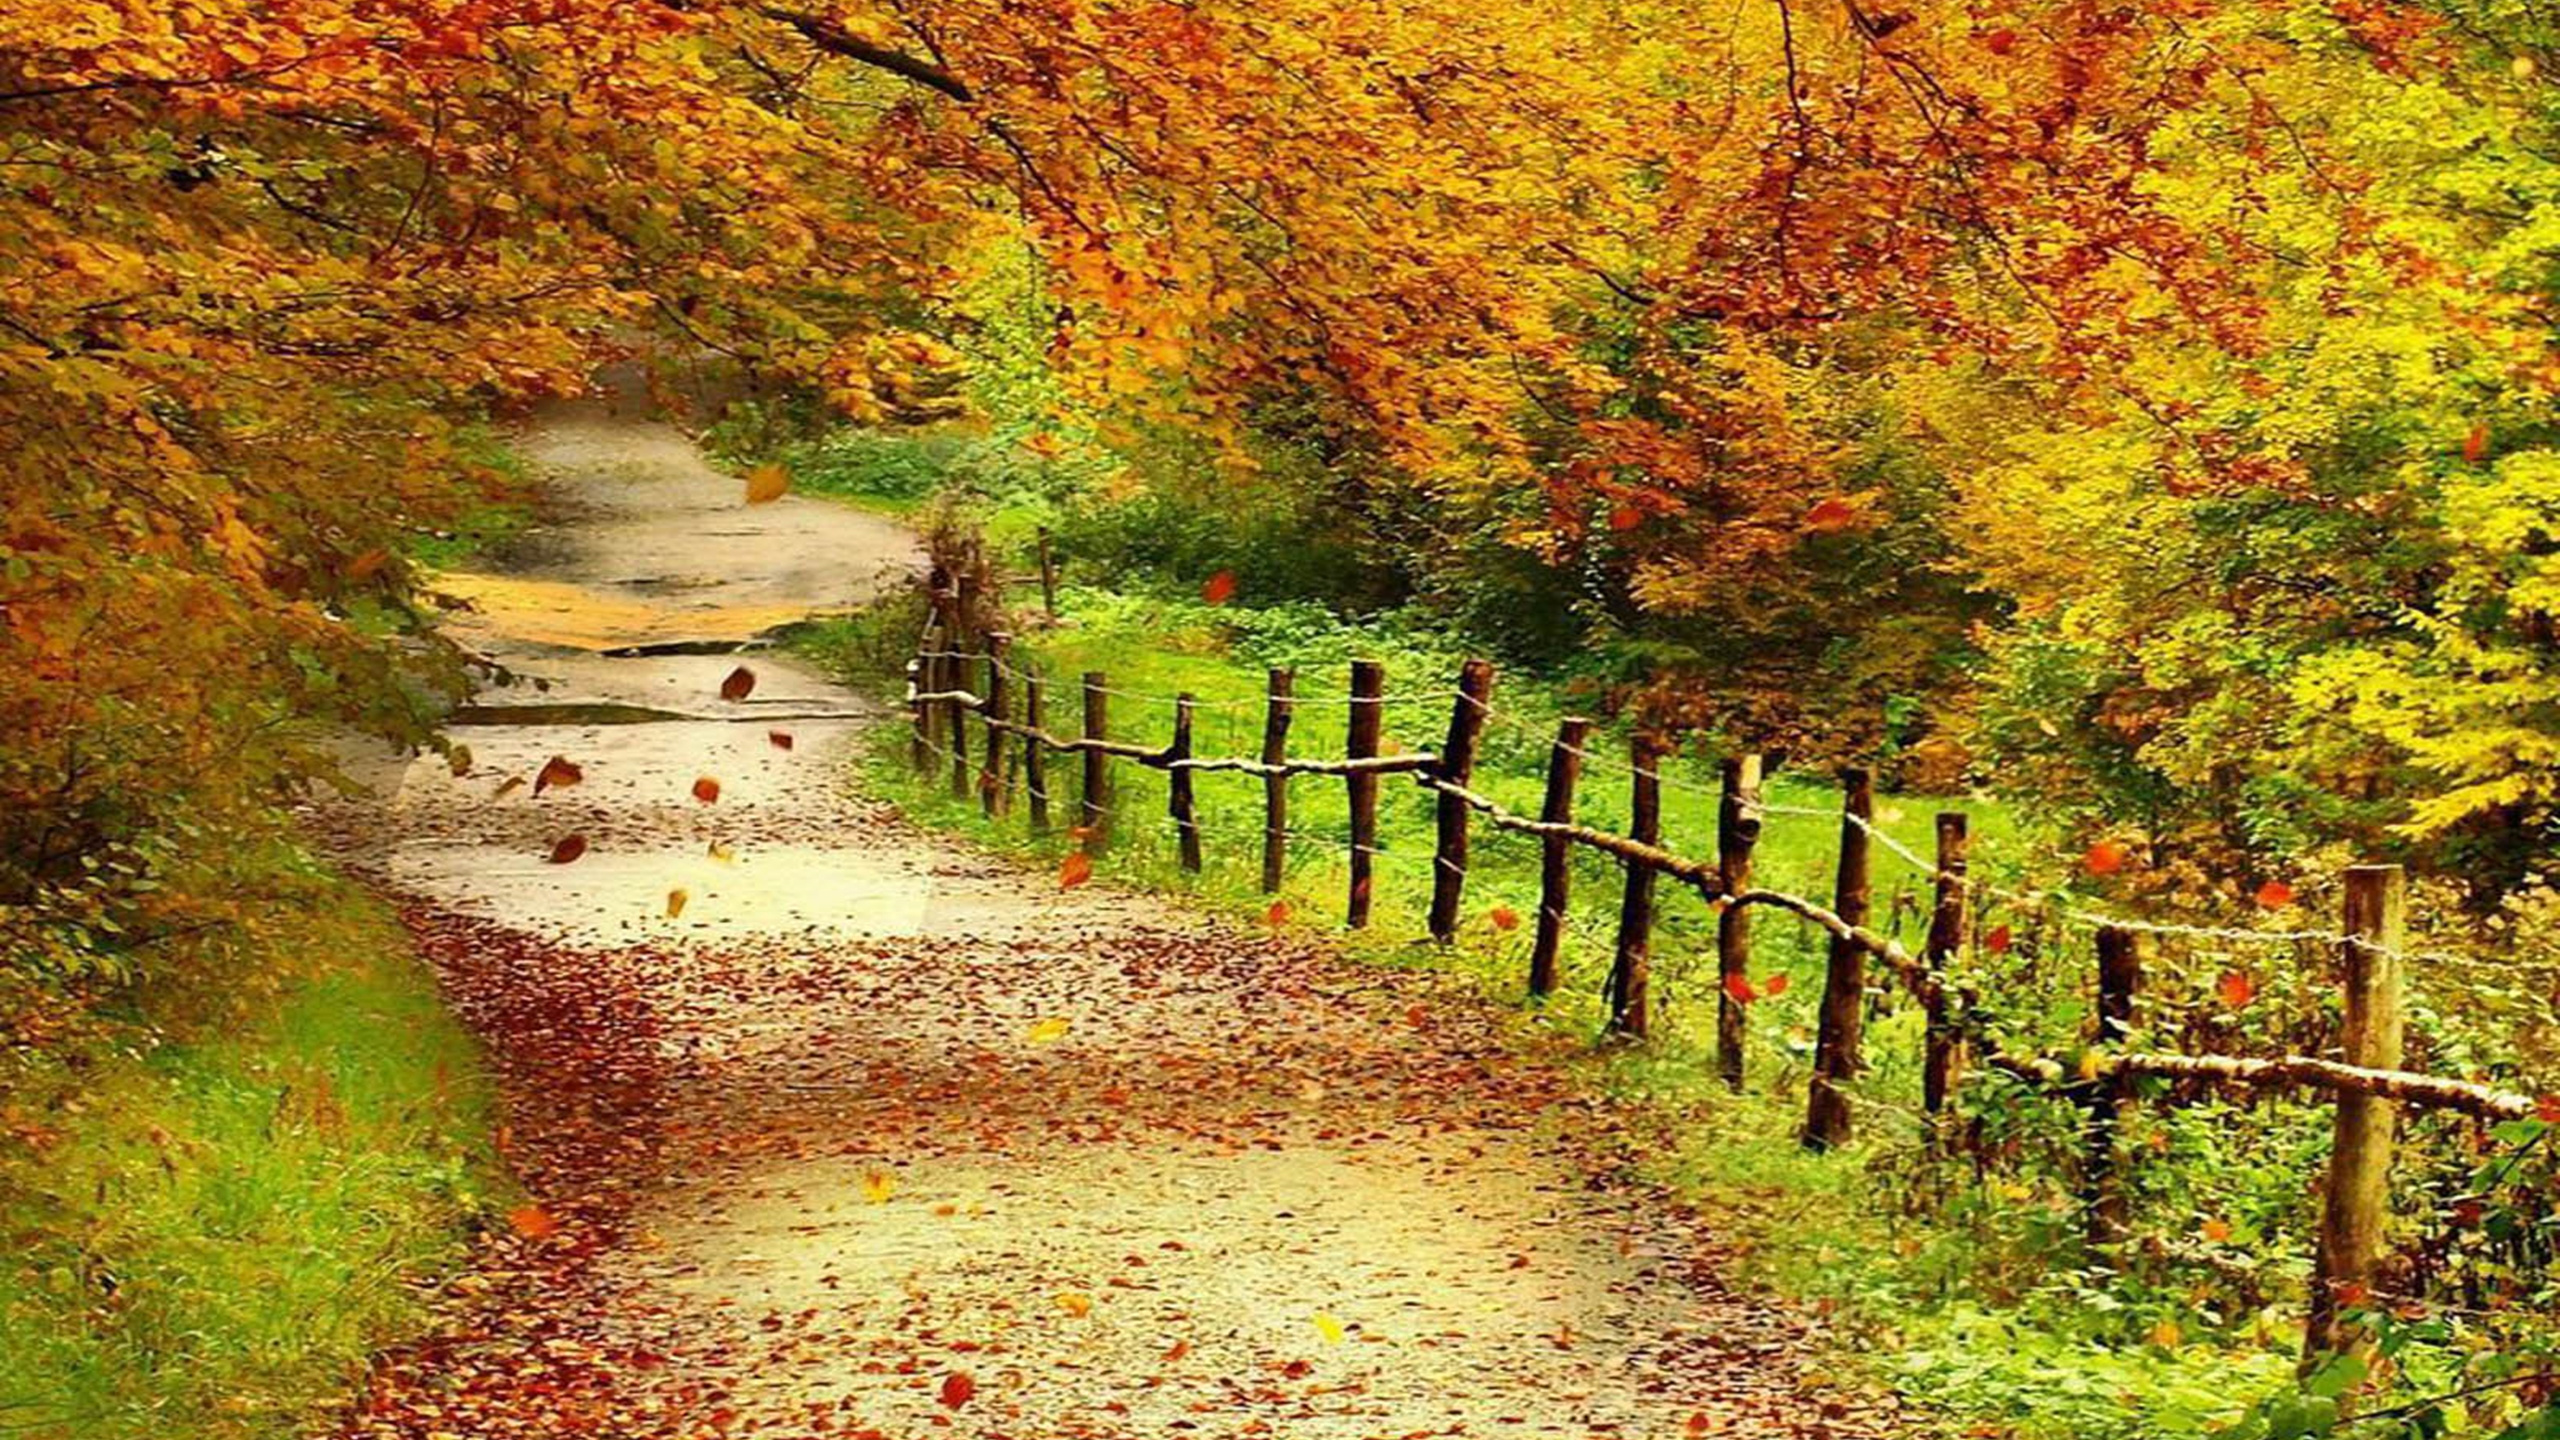 Fall scenes. Осень. Осенний пейзаж. Осенняя тропинка. Обои осень.